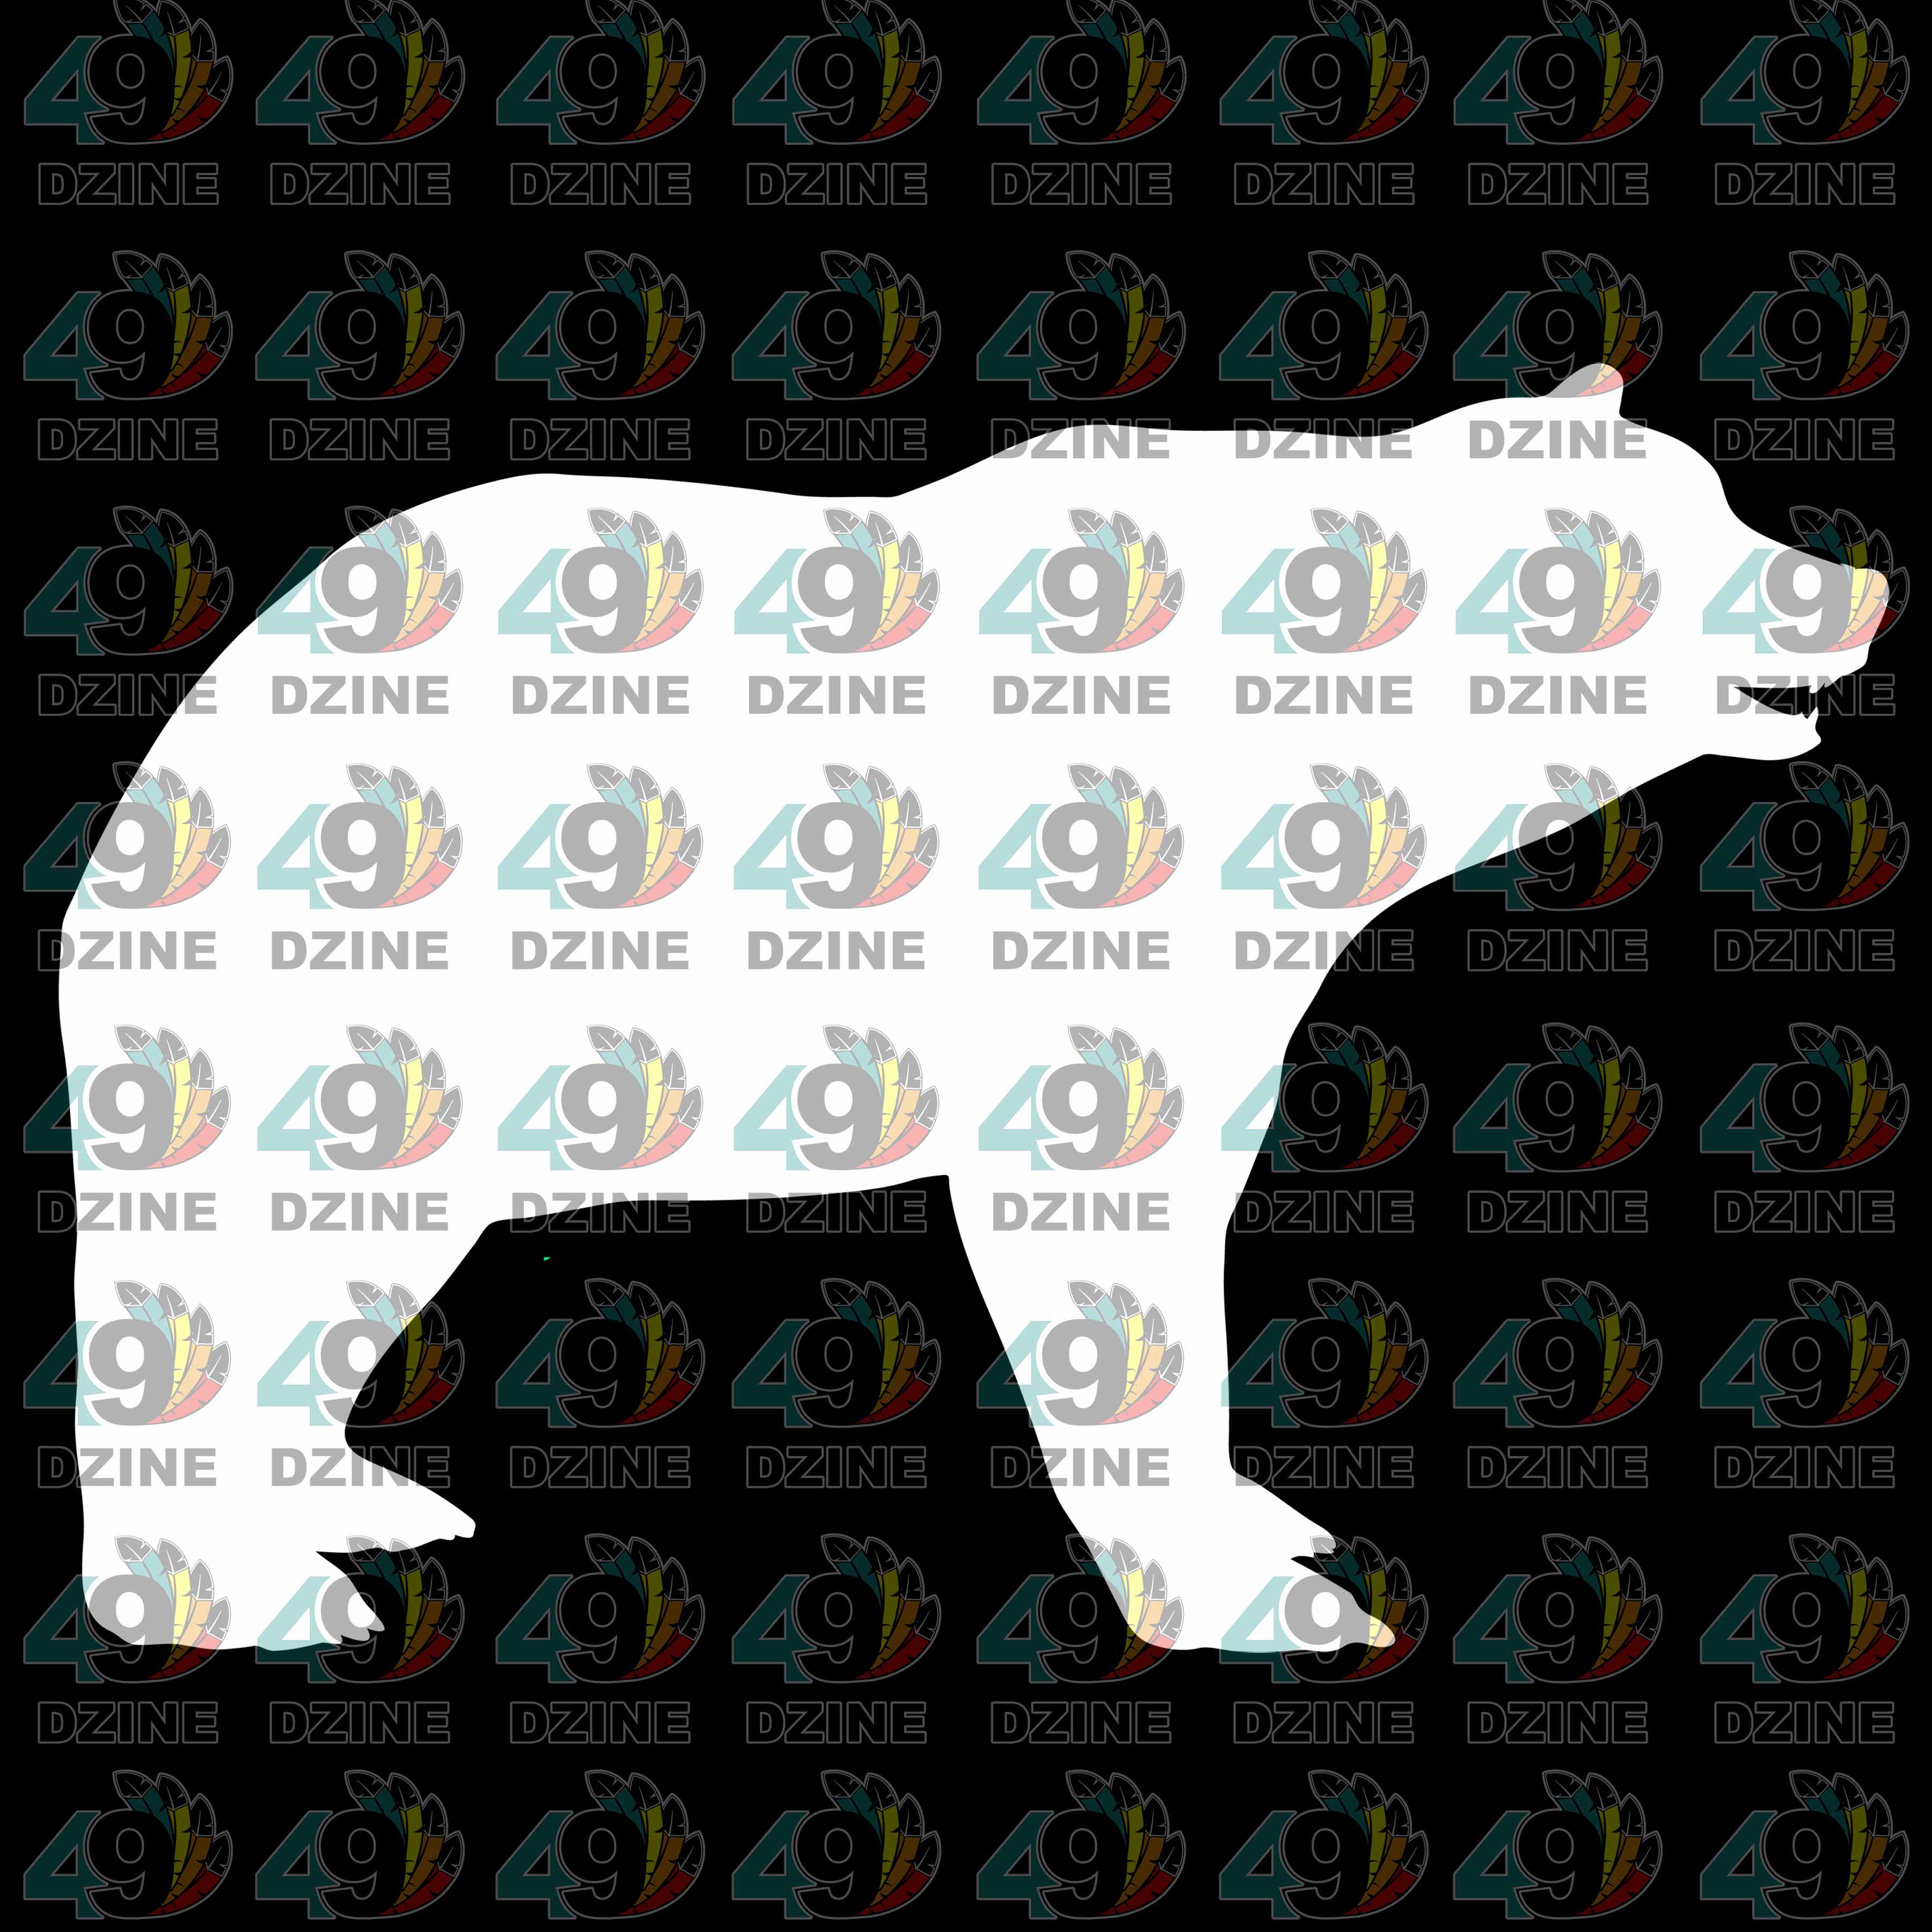 12-inch White Black Bear Transfer